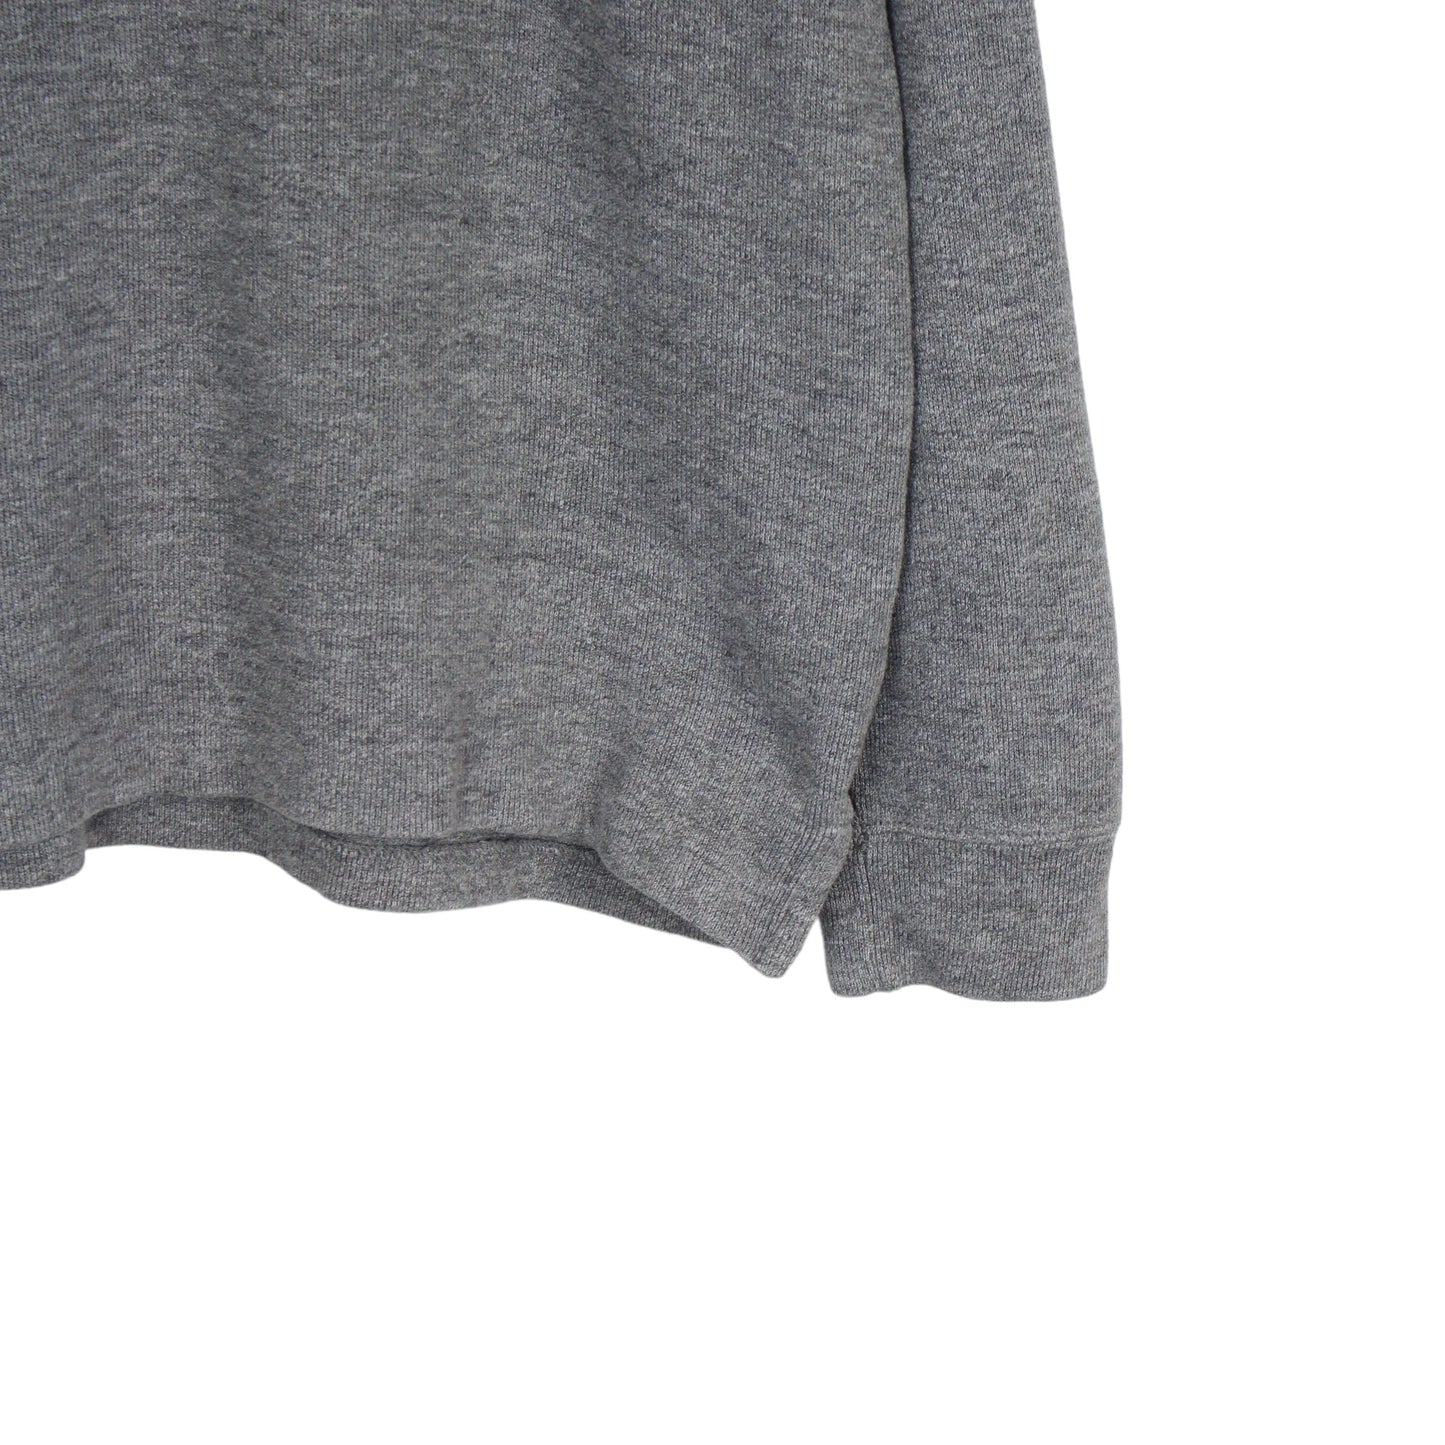 Polo Ralph Lauren Grey 1/4 Zip Sweatshirt (M)